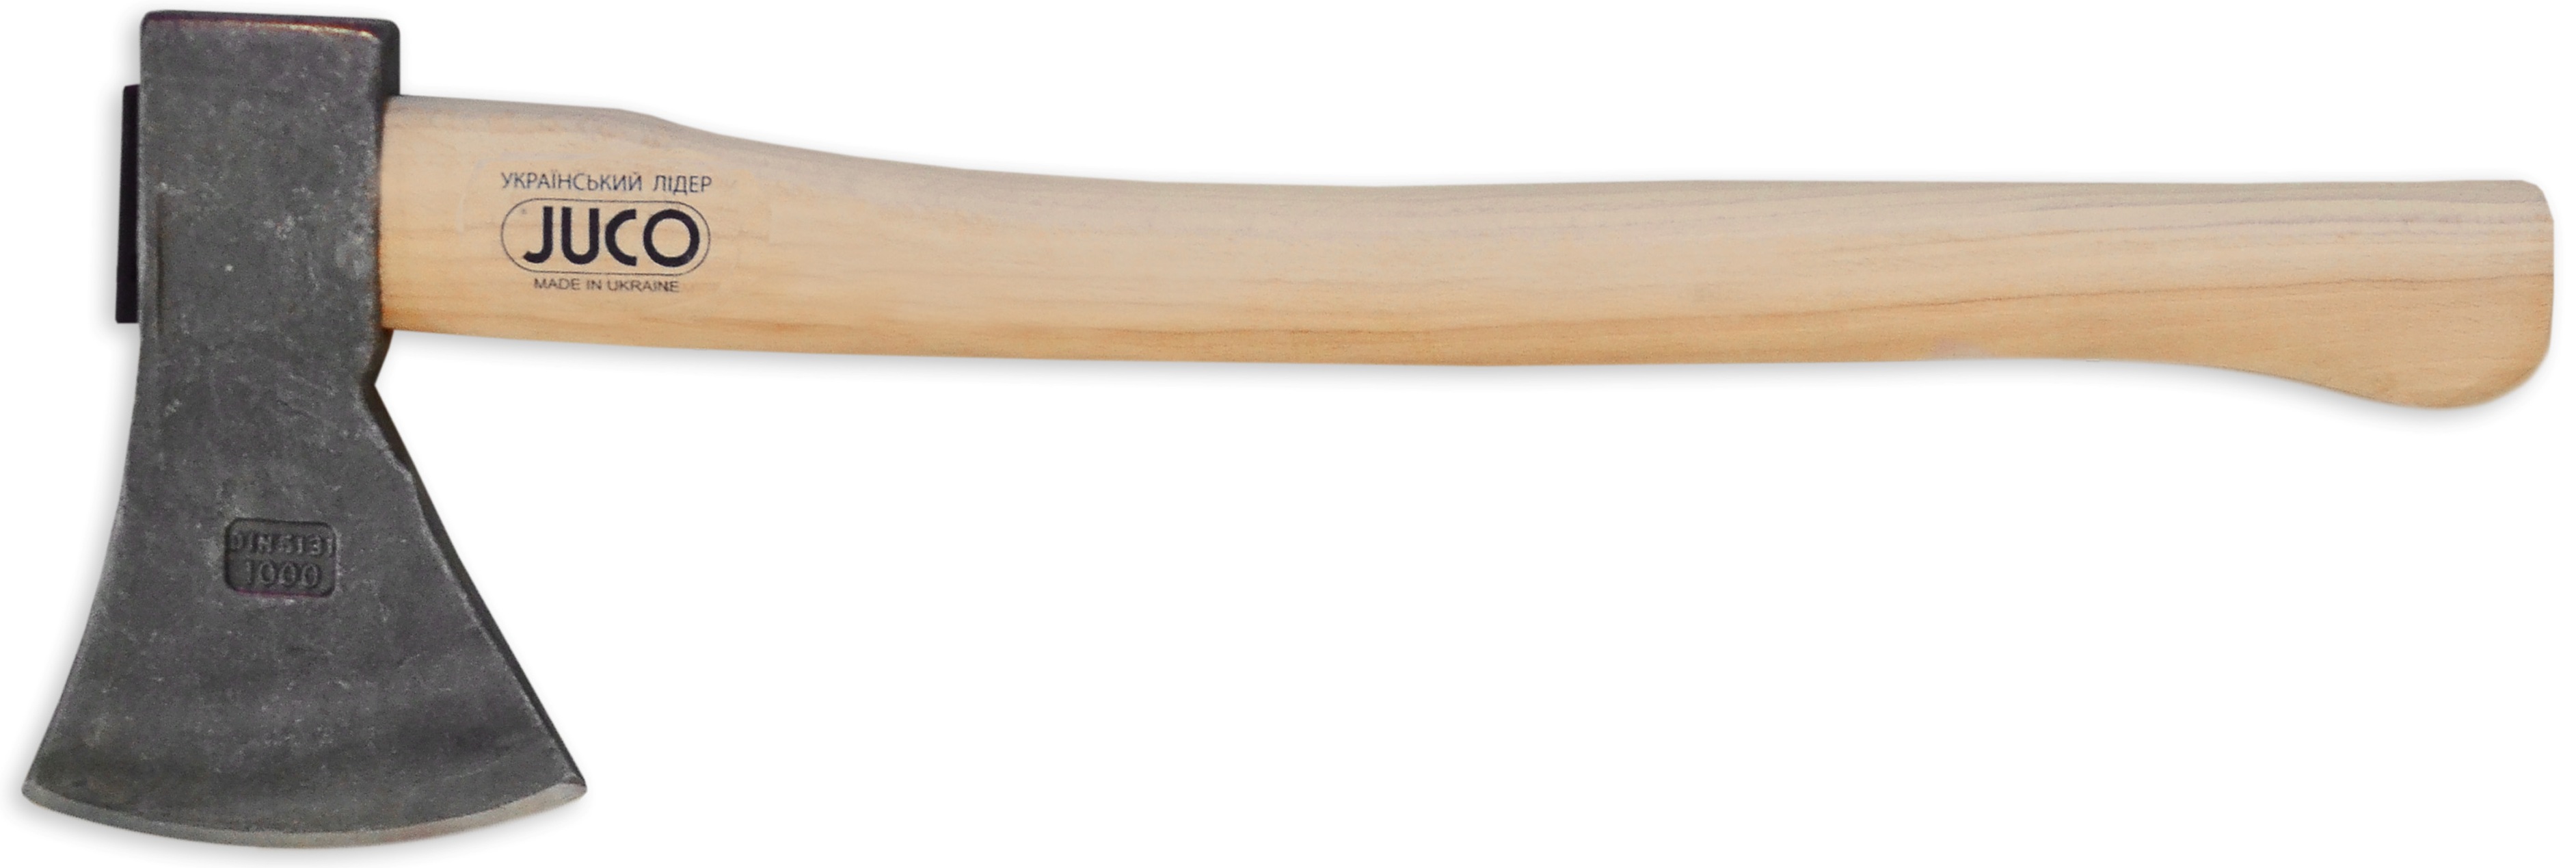 39-659 Топор с деревянной ручкой, JUCO (Украина), 1800 г